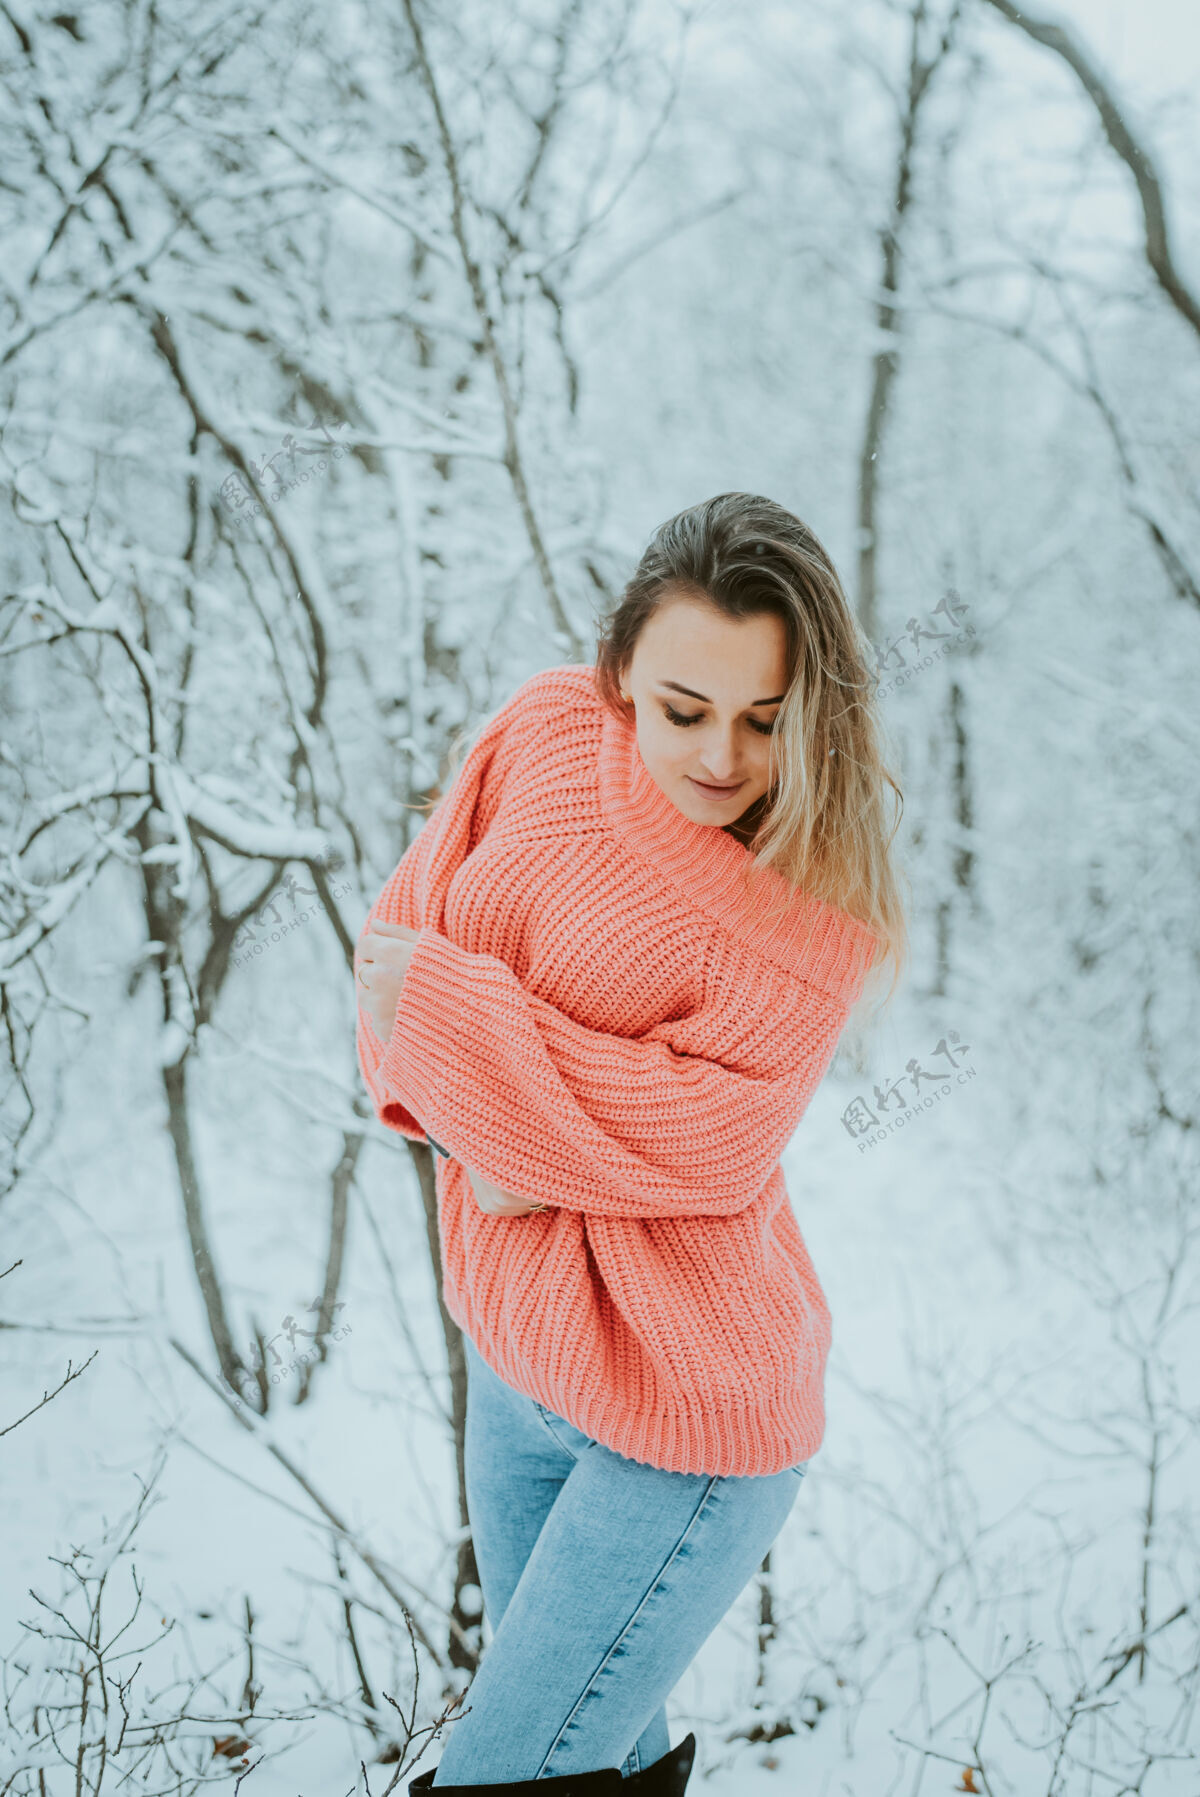 年轻一个穿着粉色宽松毛衣和牛仔裤的漂亮女孩在寒冷的雪域森林里享受性感新鲜